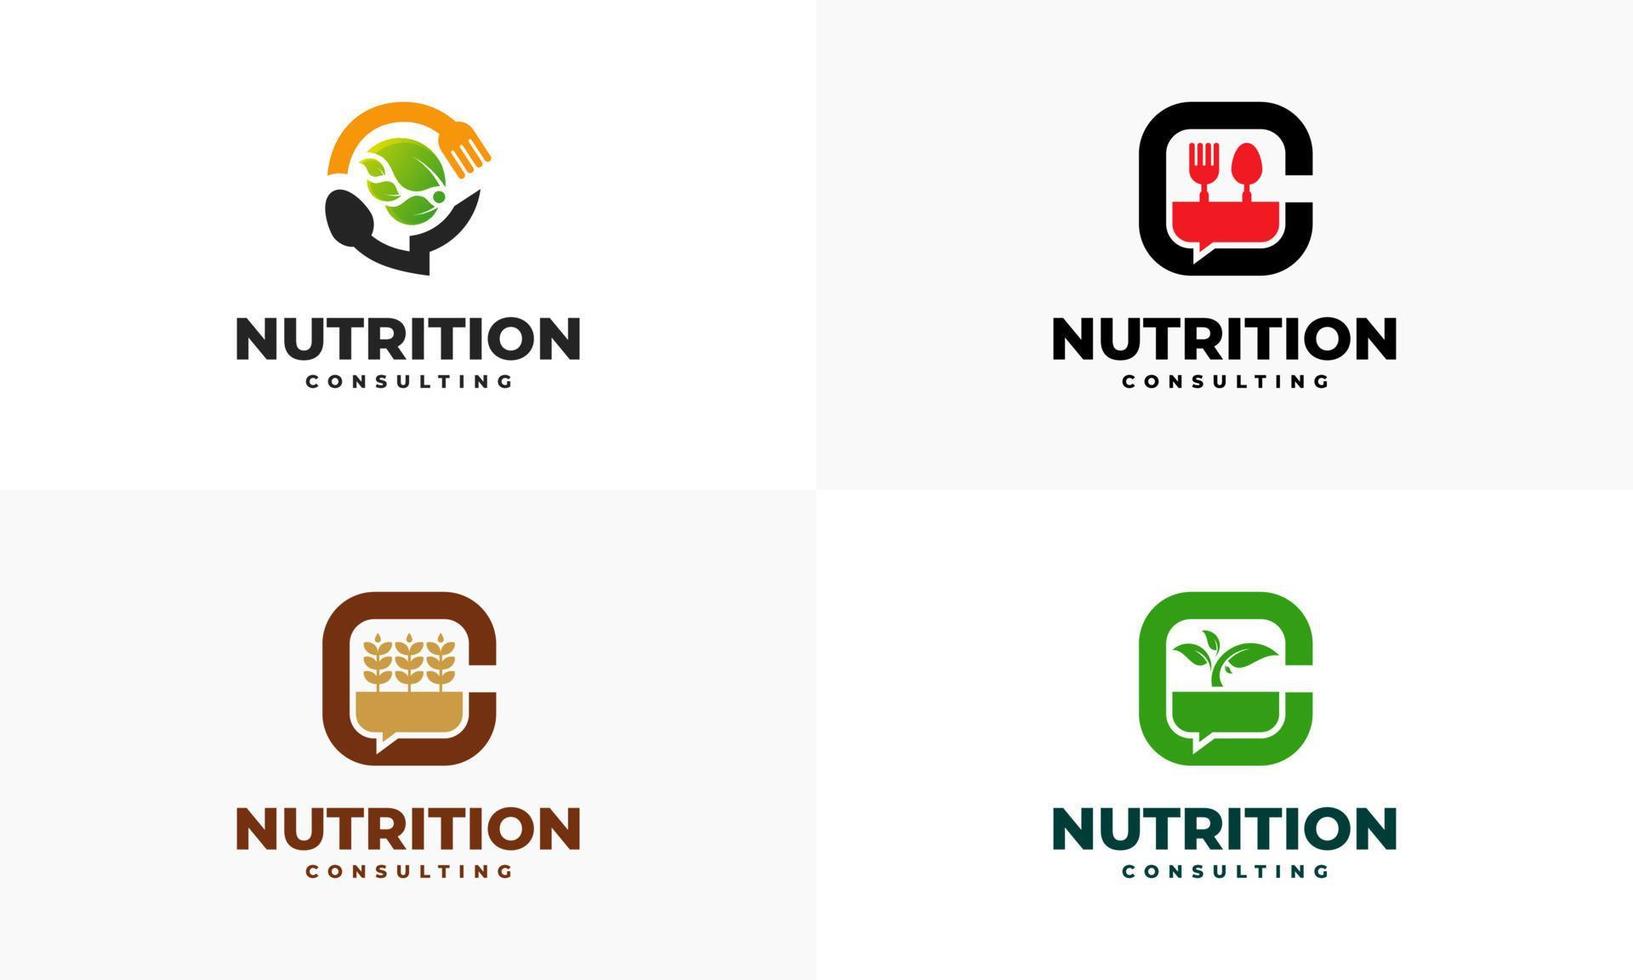 Nutrition Consulting logo designs concept vector, Food Talk logo designs template, icon symbol vector